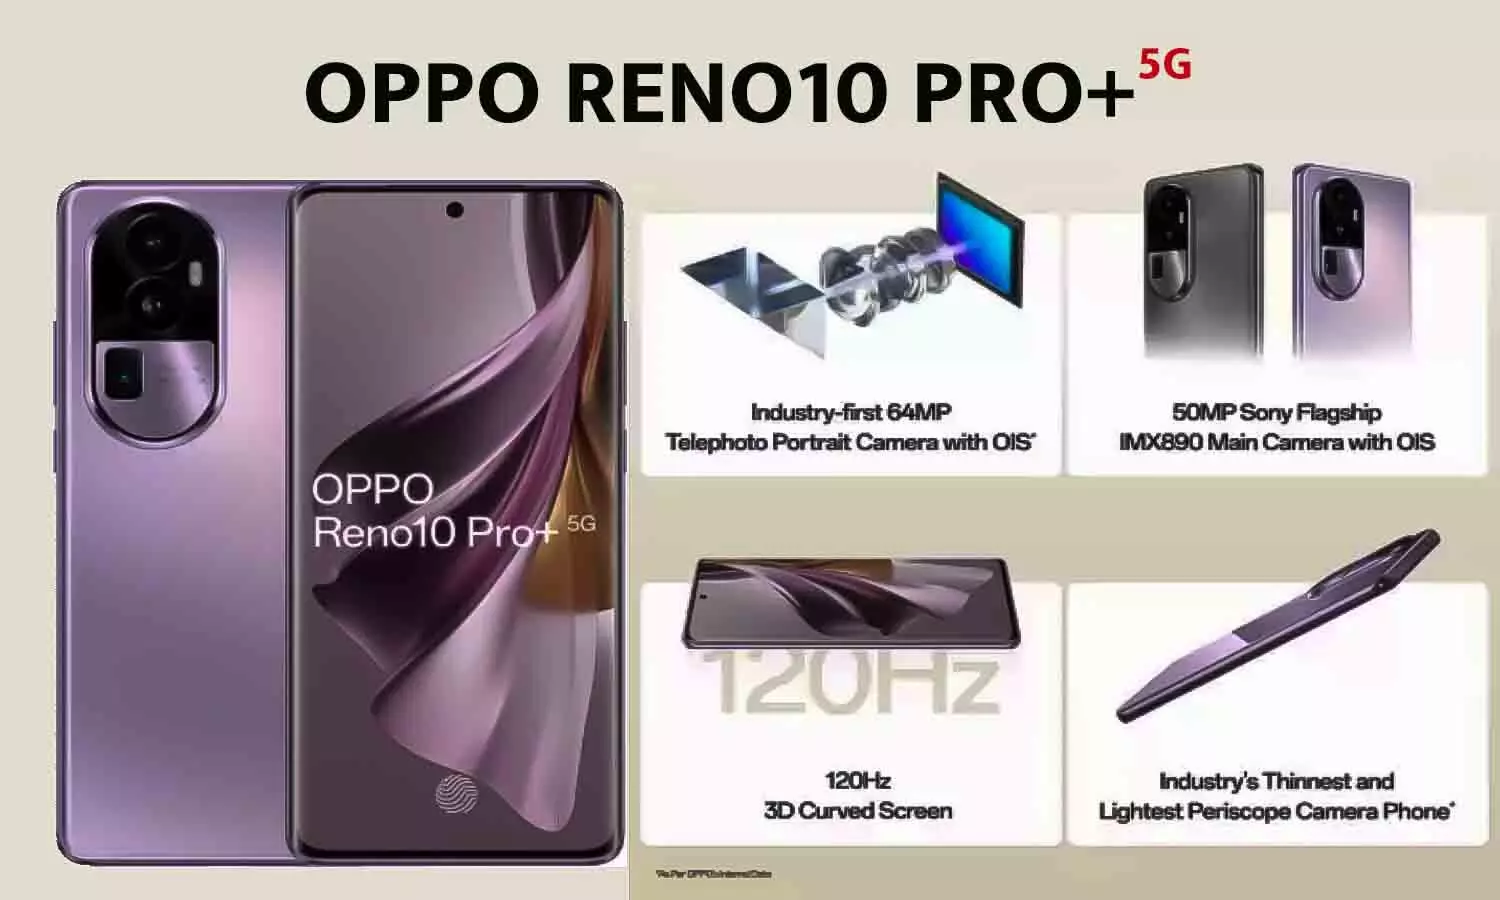 OPPO Reno10 Pro+ 5G: महज ₹11,399 में मिल सकता है ₹54,999 वाला ओप्पो का धांसू और लेटेस्ट रेनो 10 प्रो प्लस स्मार्टफोन, जल्द आर्डर करें